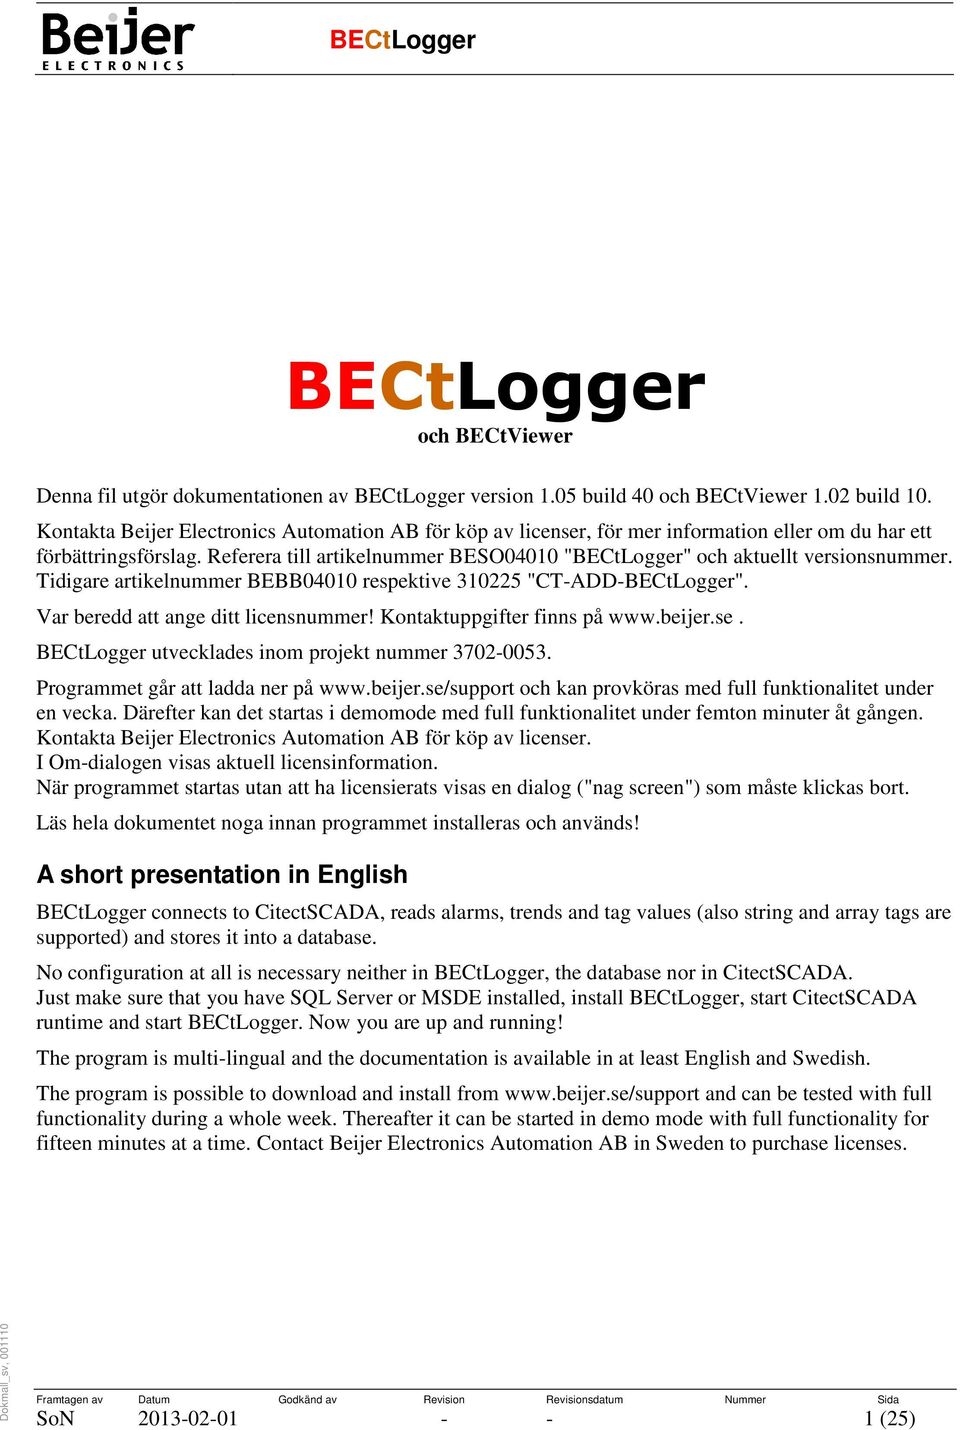 Referera till artikelnummer BESO04010 "BECtLogger" och aktuellt versionsnummer. Tidigare artikelnummer BEBB04010 respektive 310225 "CT-ADD-BECtLogger". Var beredd att ange ditt licensnummer!